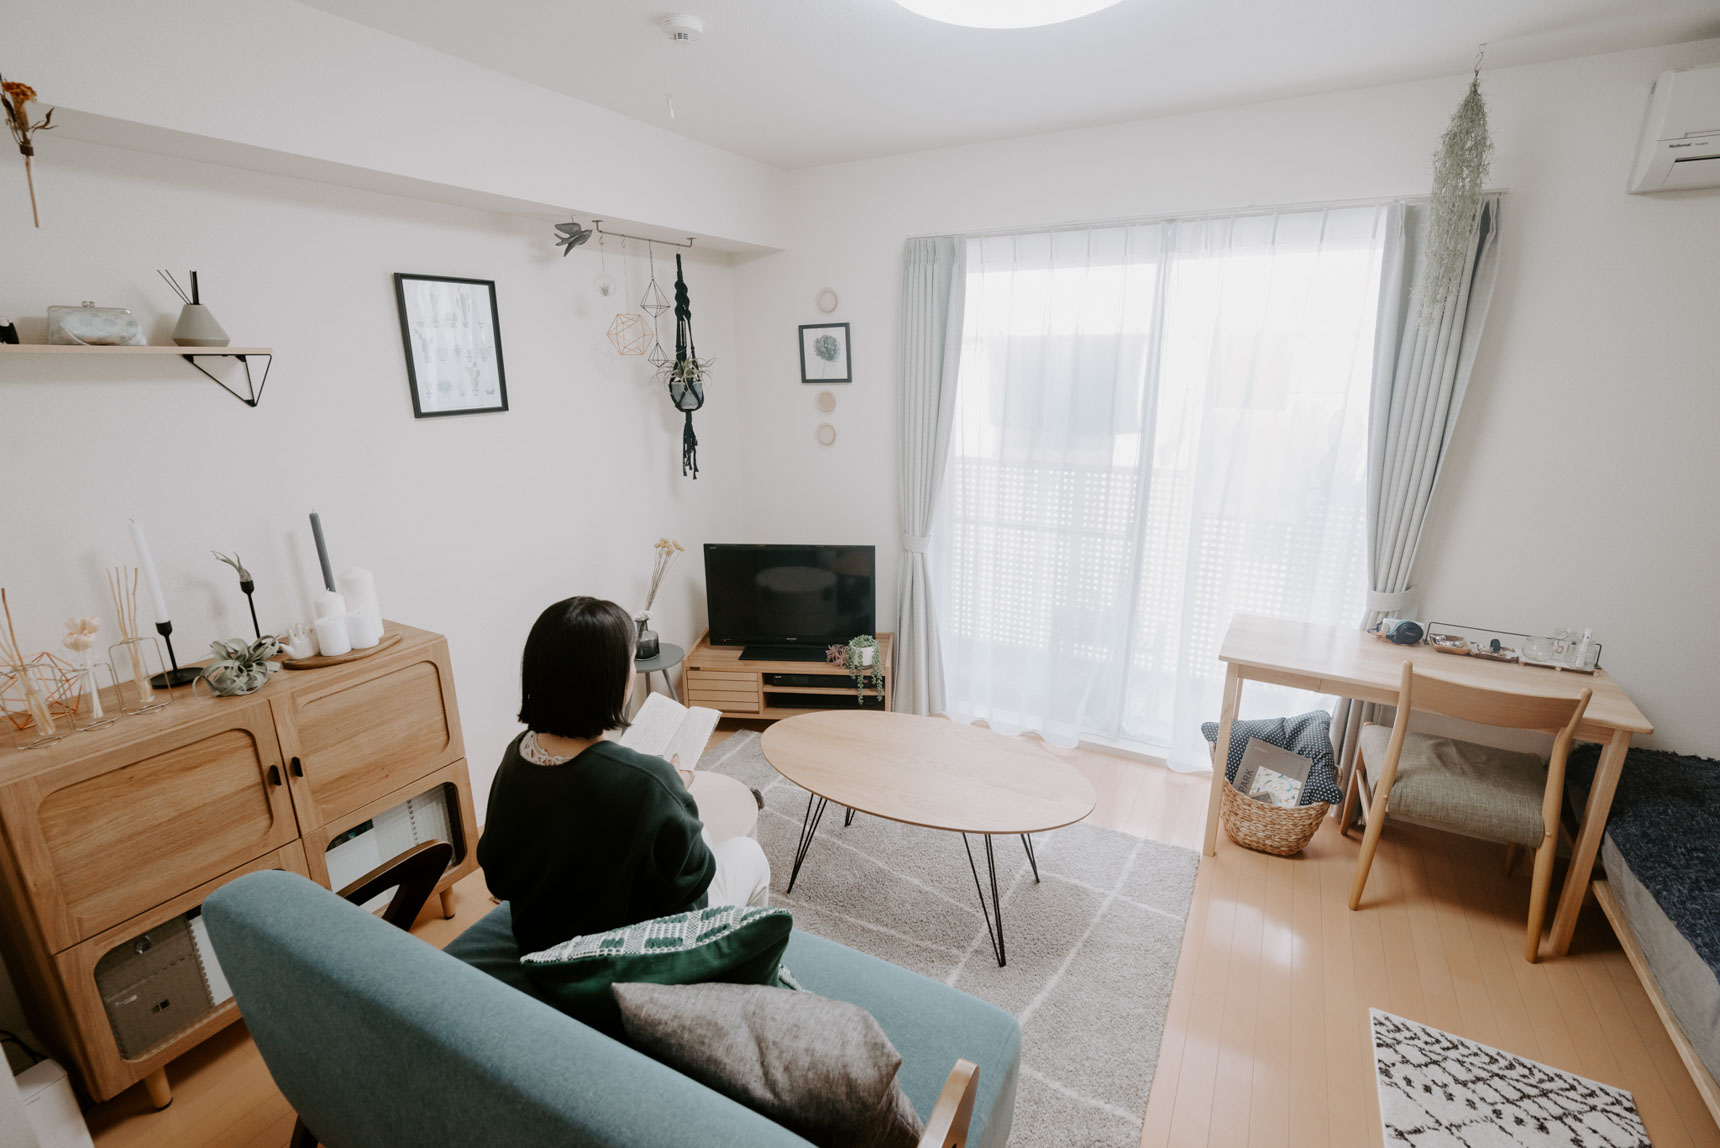 kanaさんがお住まいなのは8.3畳ほどのワンルーム。生活動線の考えられた家具配置が見事で、とても広く見えるお部屋です。